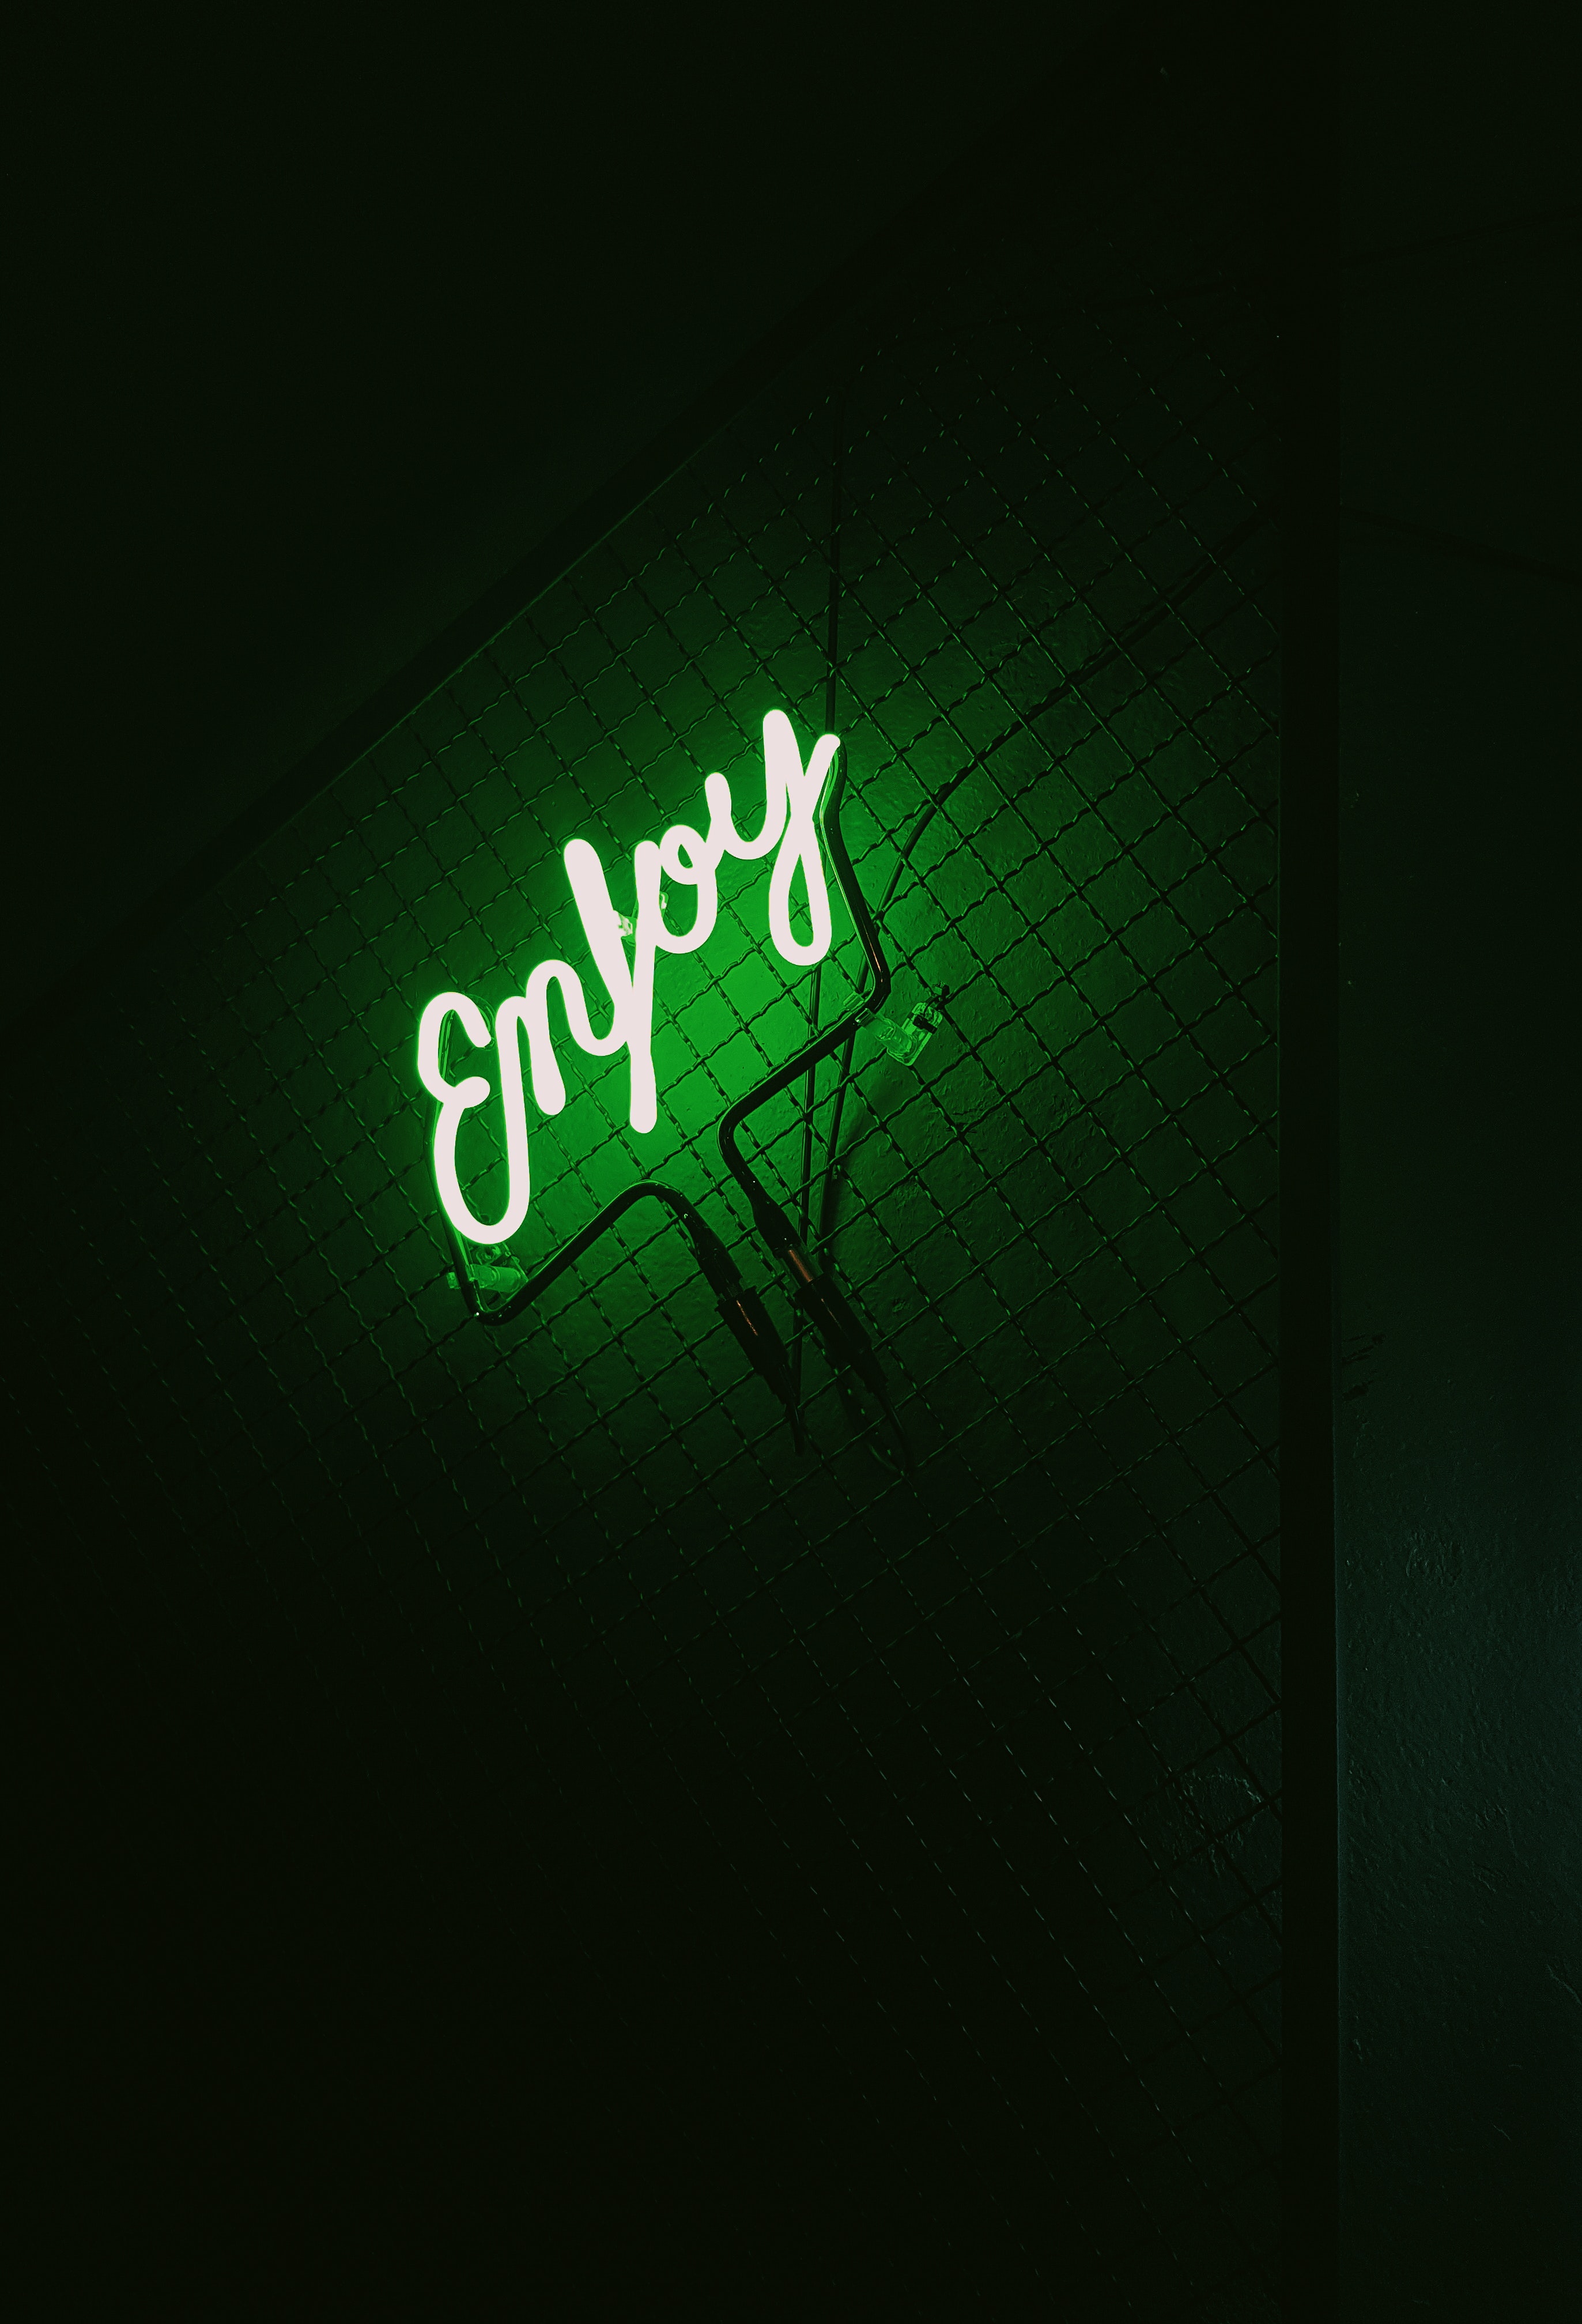 backlight, words, dark, neon, green, illumination, inscription iphone wallpaper